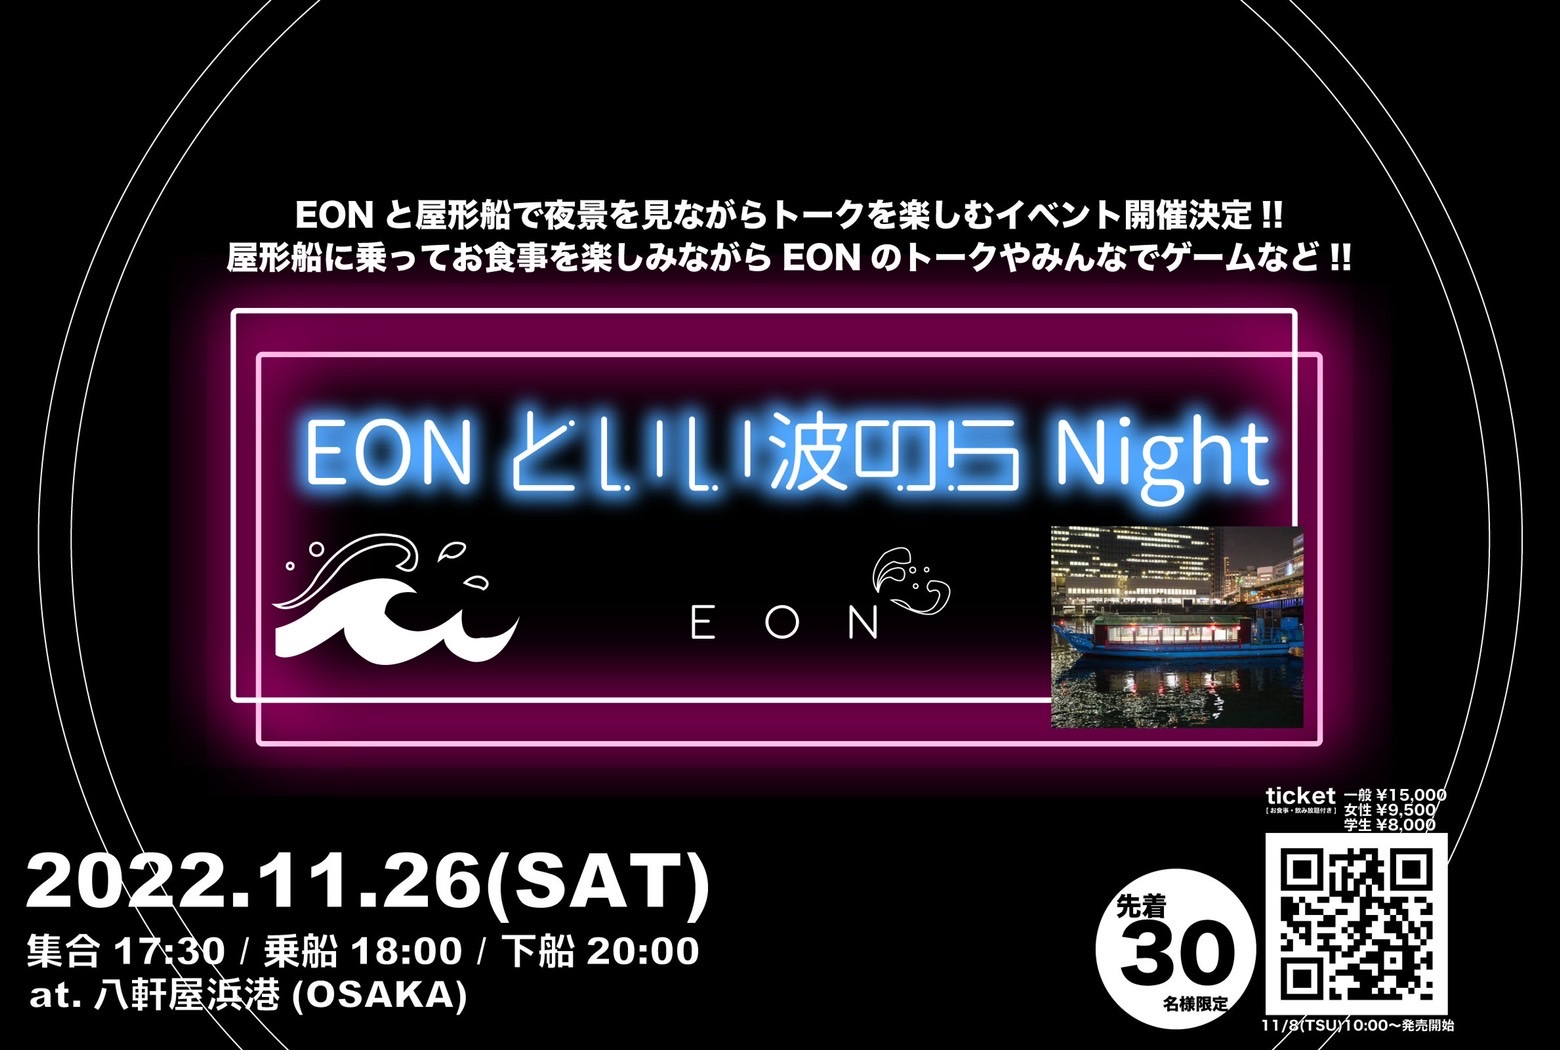 EON屋形船イベント『EONといい波のらNight』